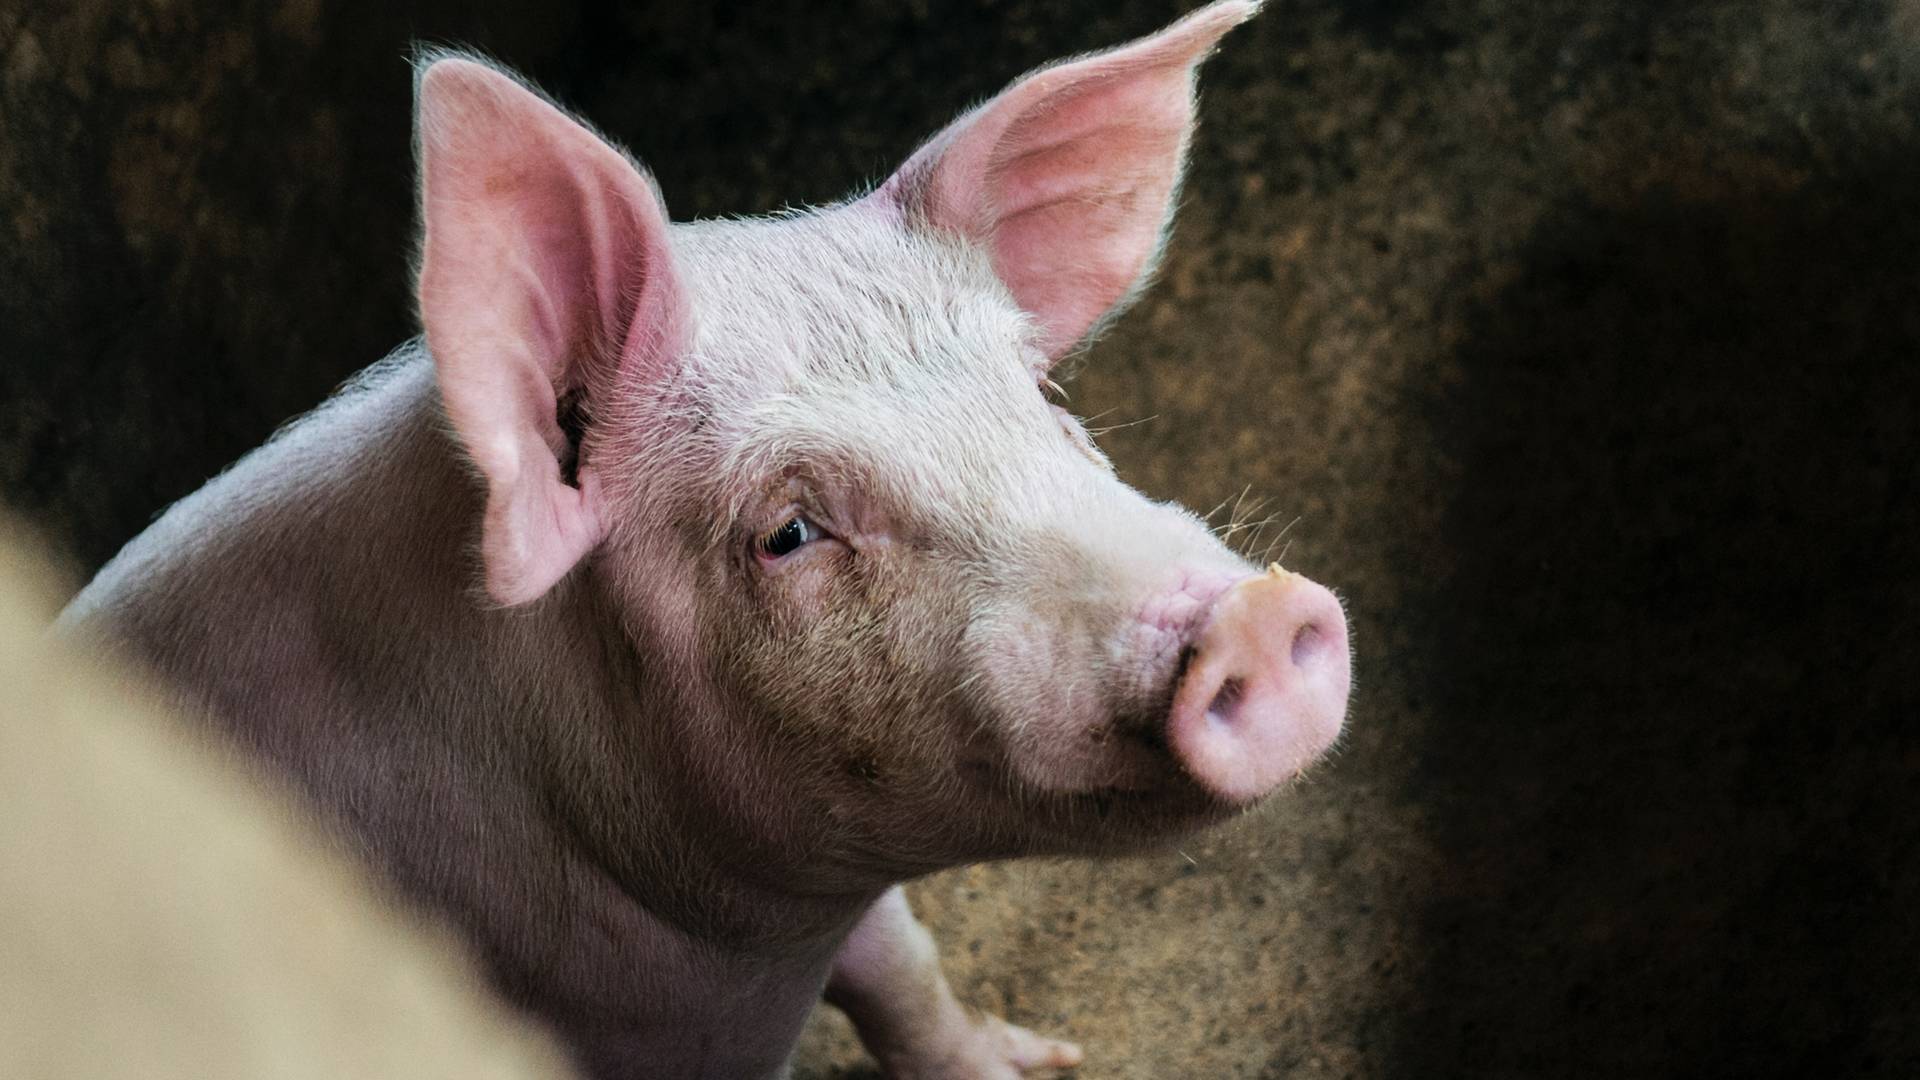 Fabryka samochodów wykorzystywała żywe świnie do testów zderzeniowych. Zginęło wiele zwierząt